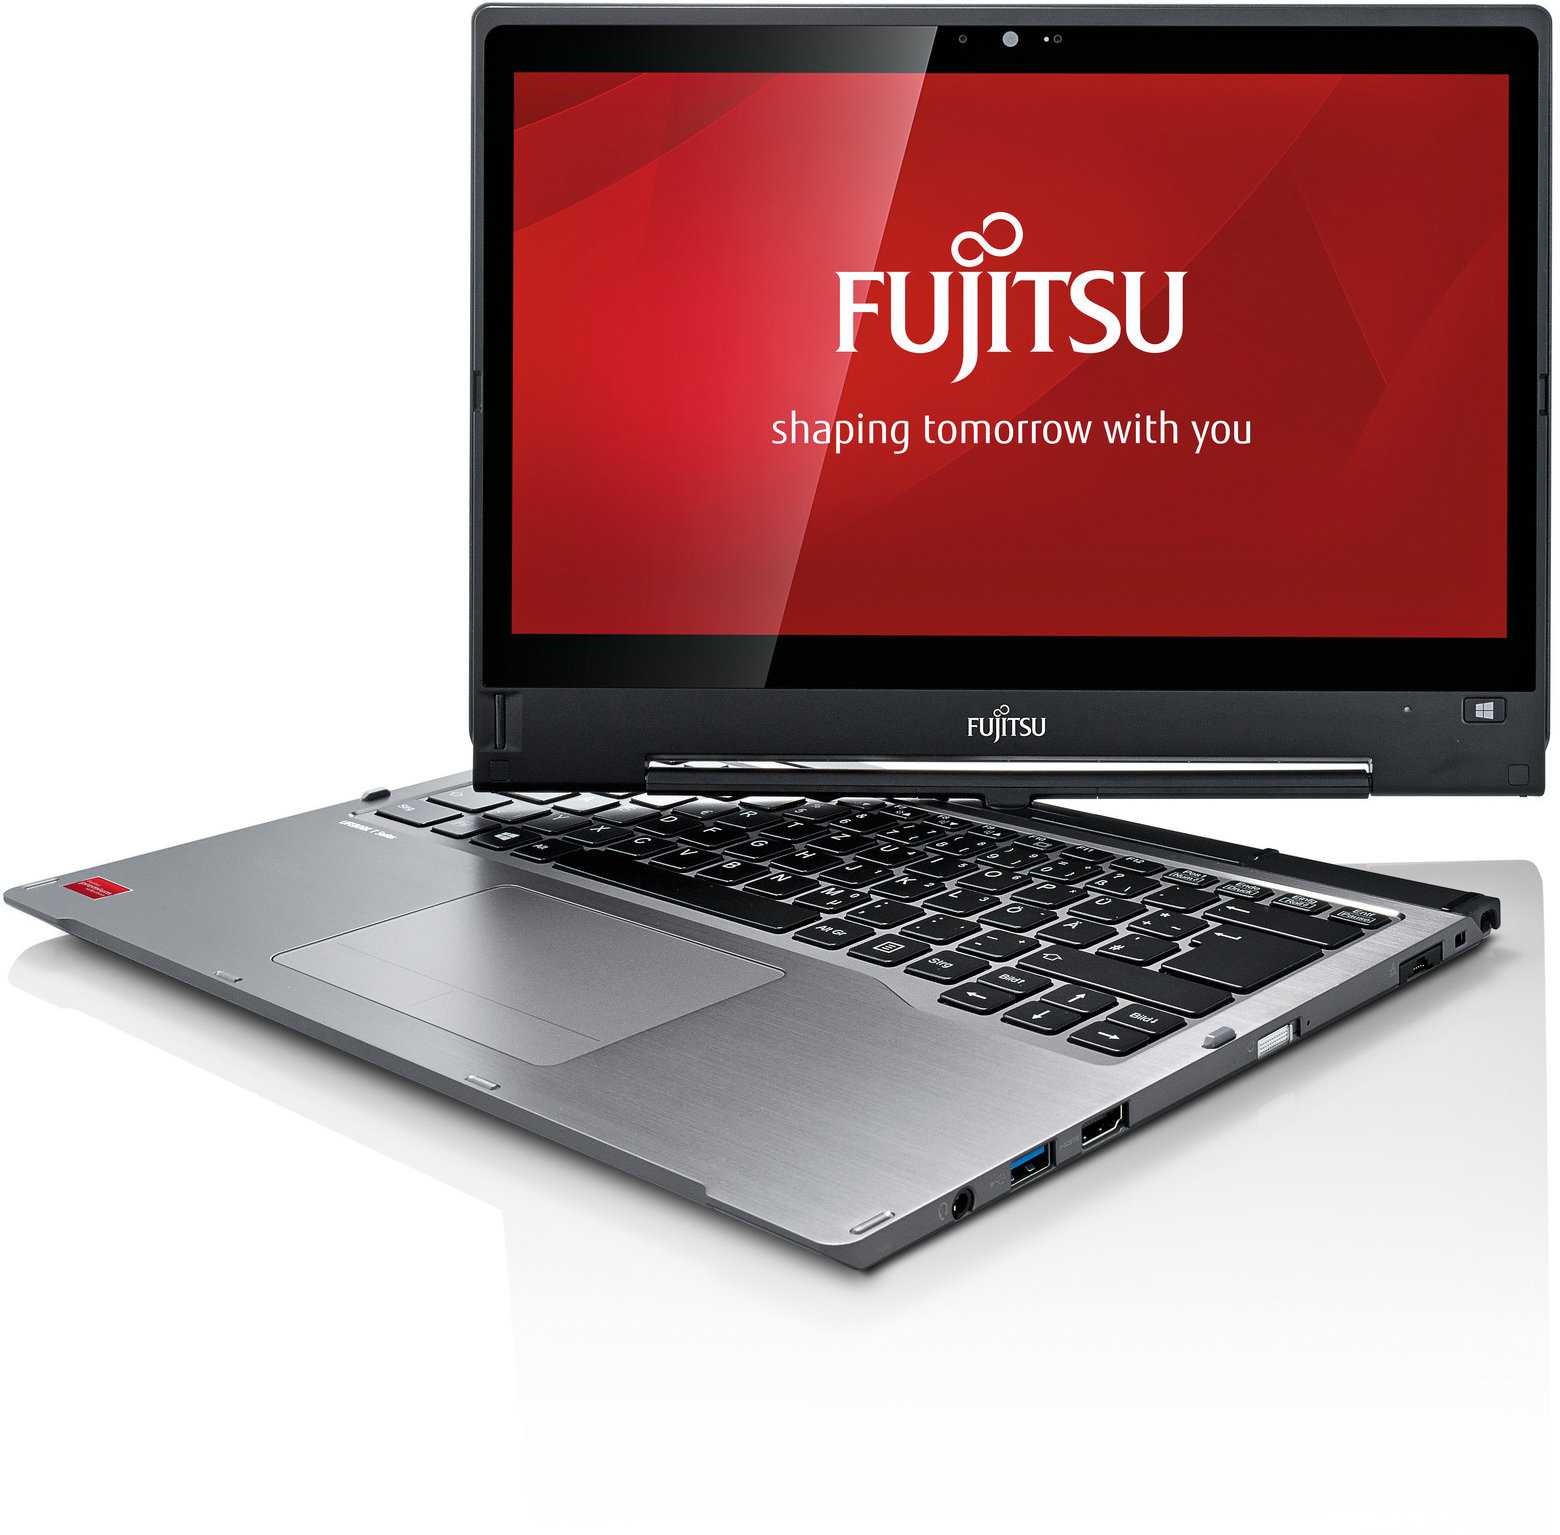 Ноутбук fujitsu lifebook s904 (s9040m0009ru) купить за 99990 руб в екатеринбурге, отзывы, видео обзоры и характеристики